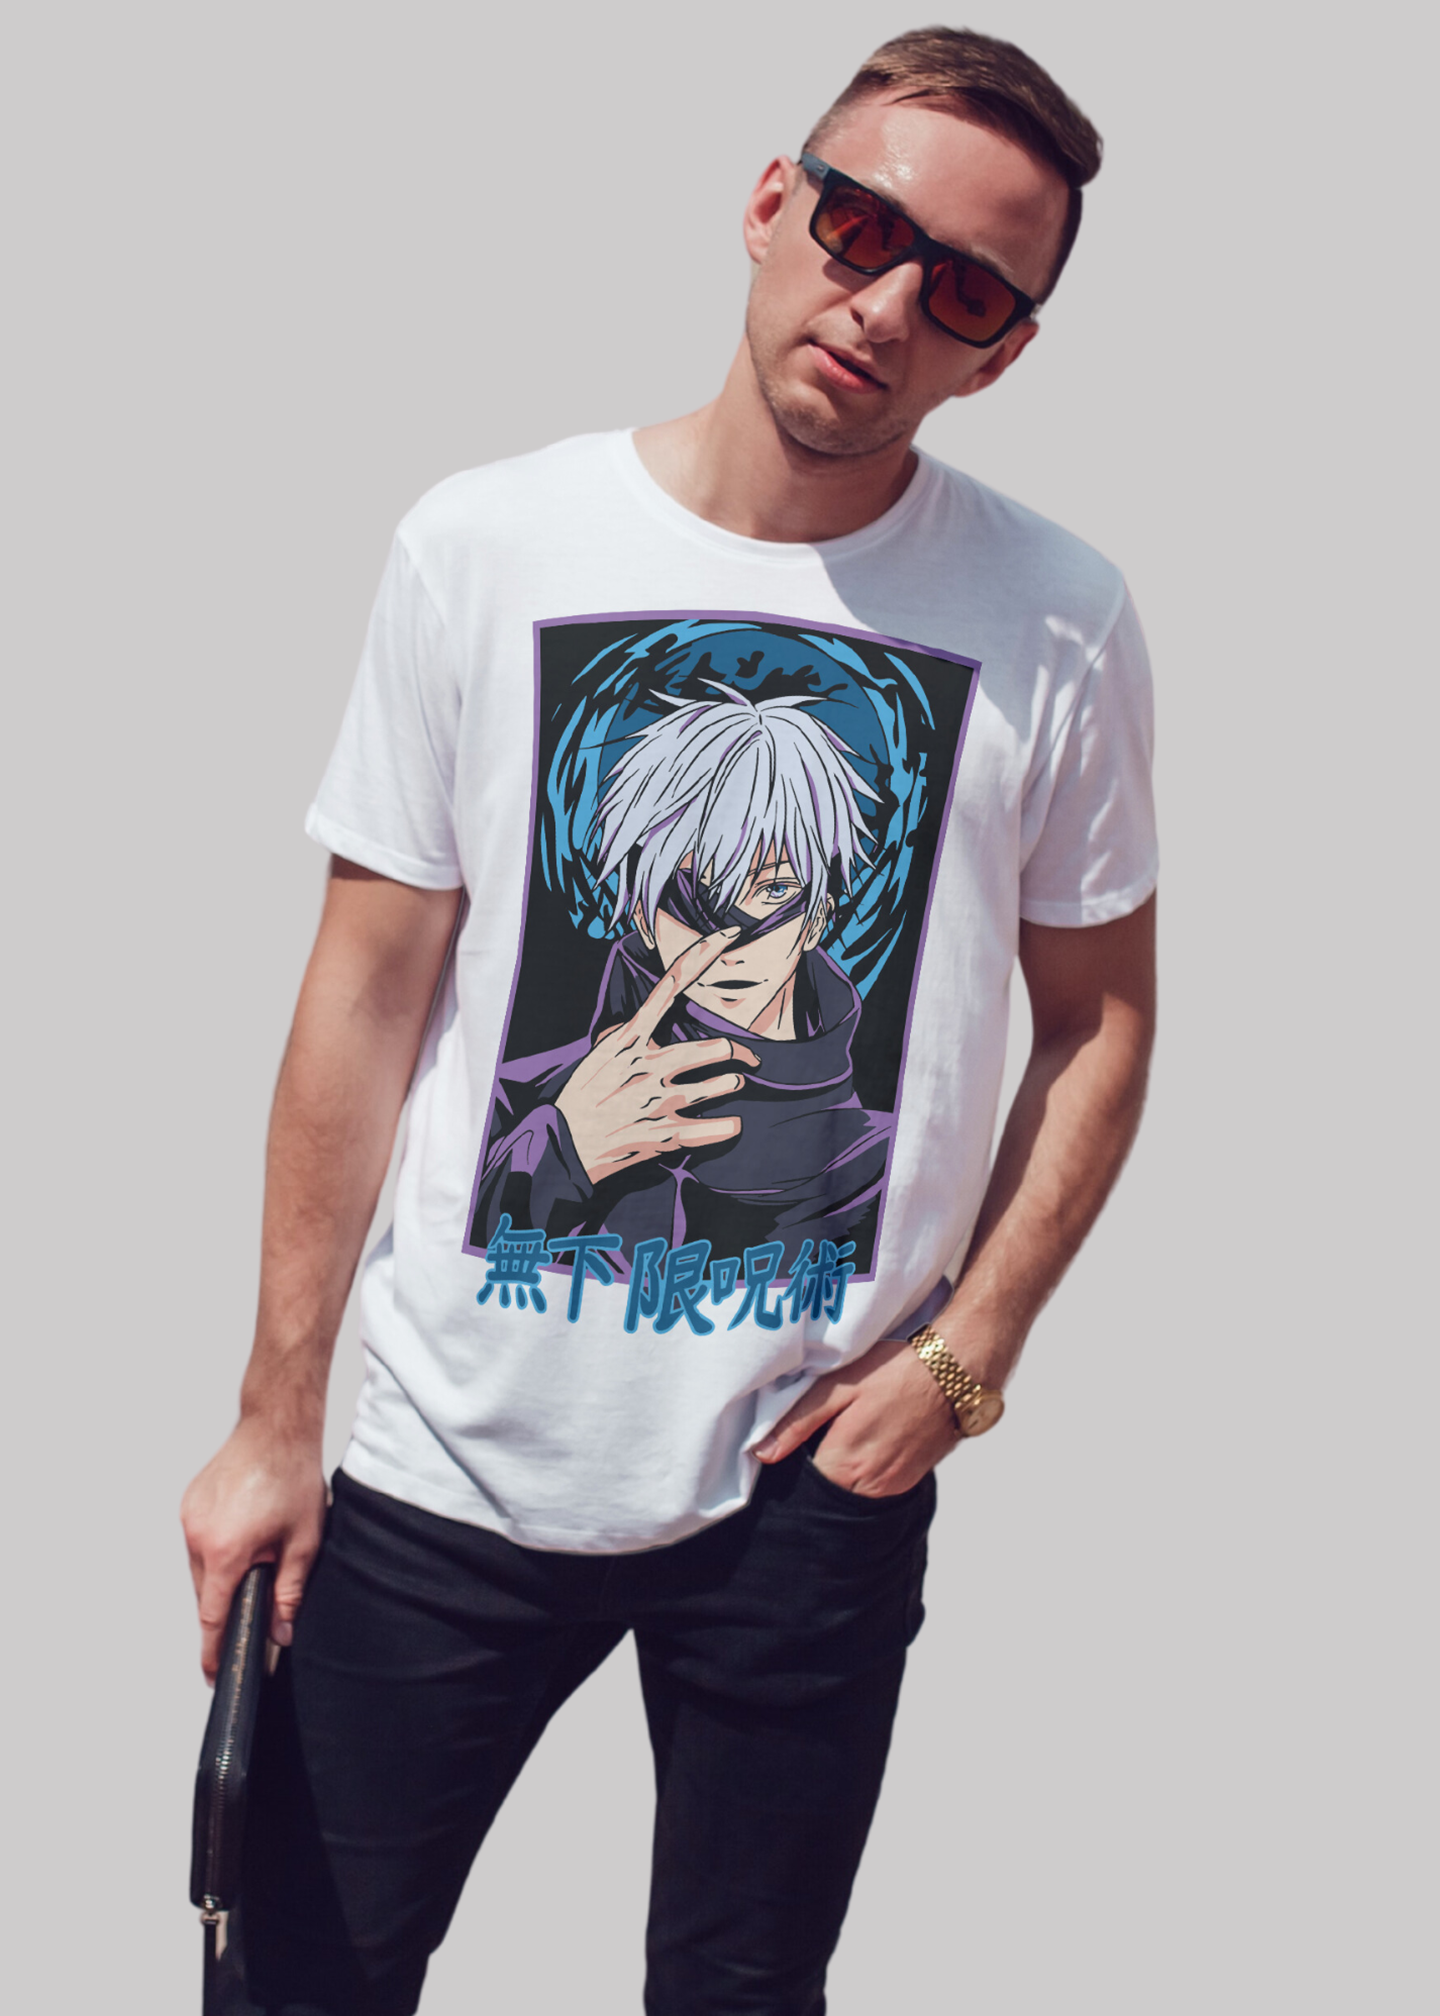 Gojo satoru jujutsu kaisen Printed Half Sleeve Premium Cotton T-shirt For Men